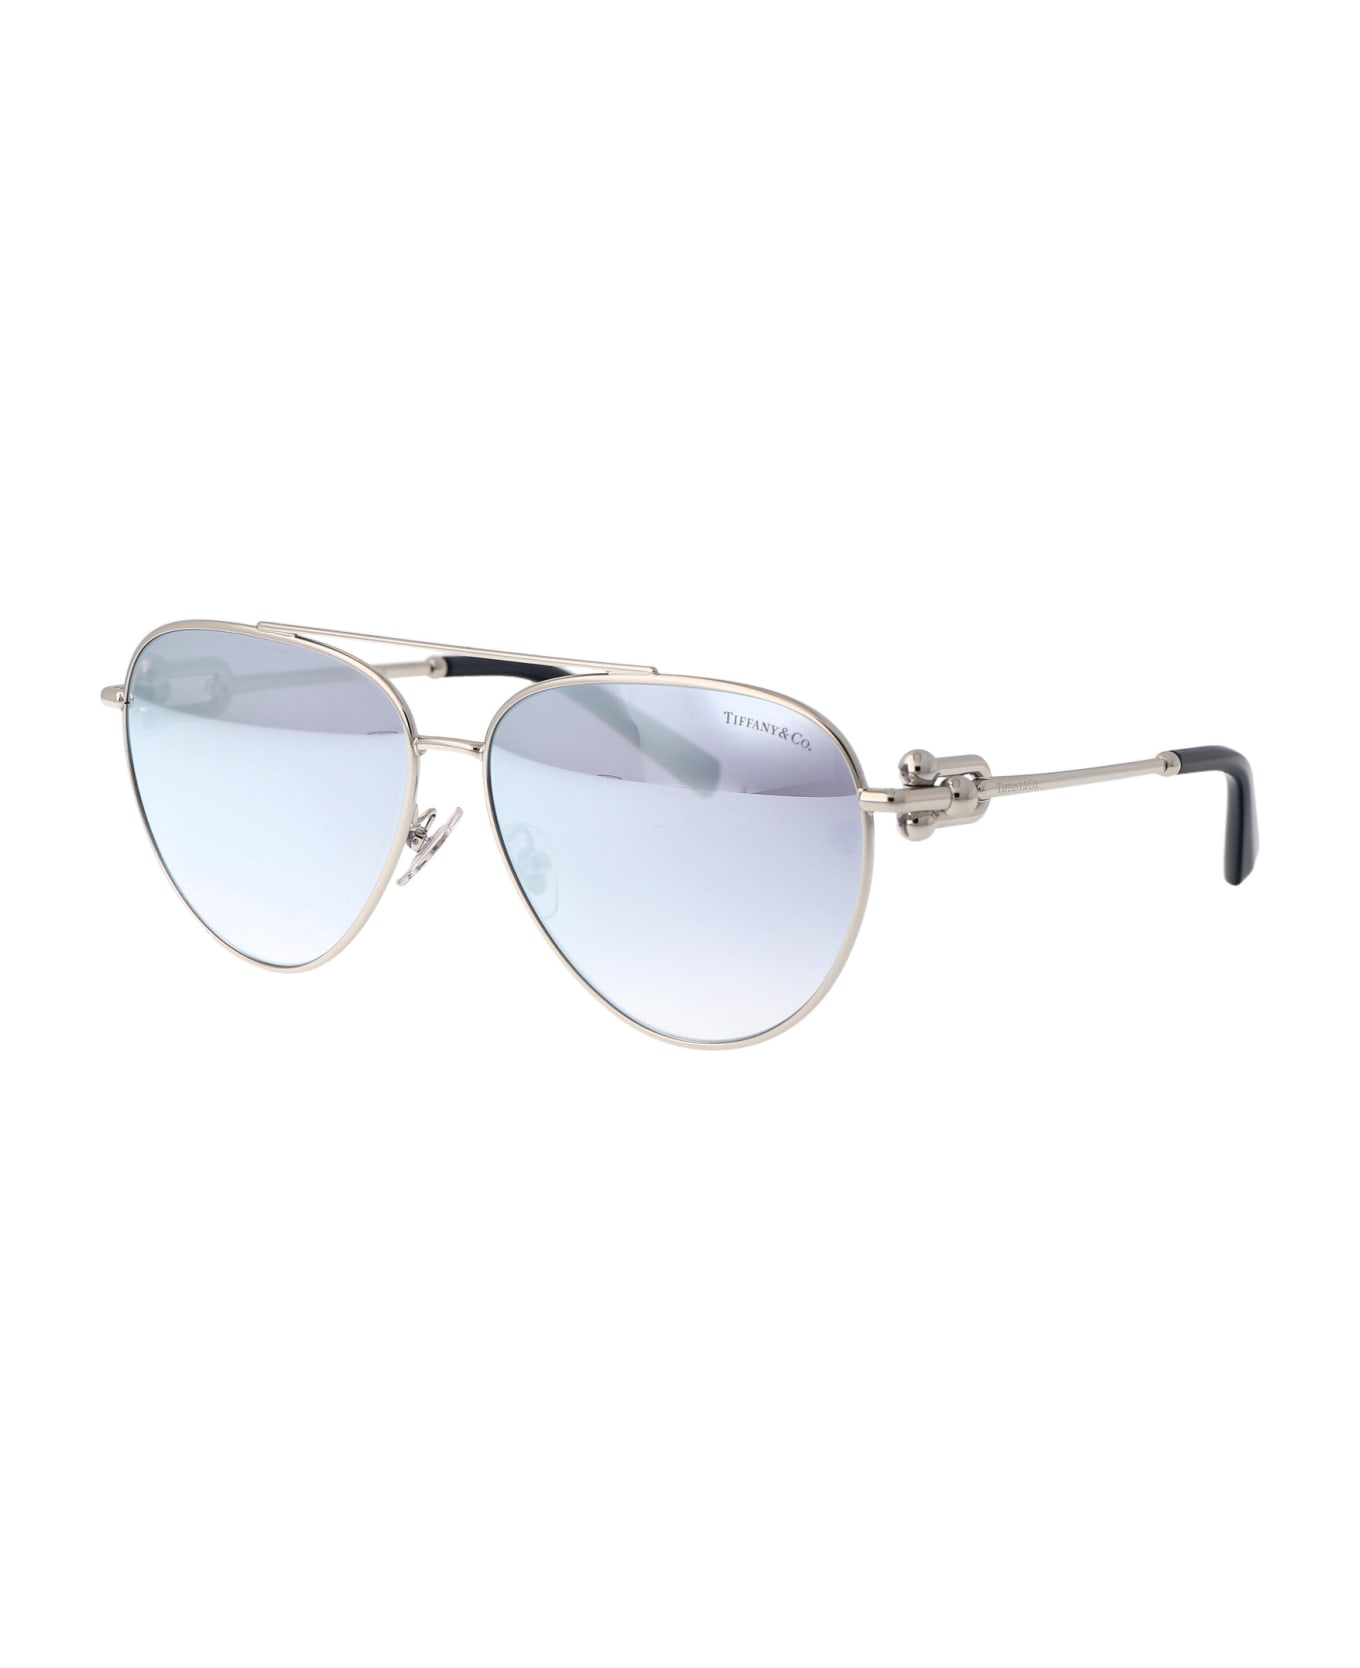 Tiffany & Co. 0tf3092 Sunglasses - 6175V6 Silver